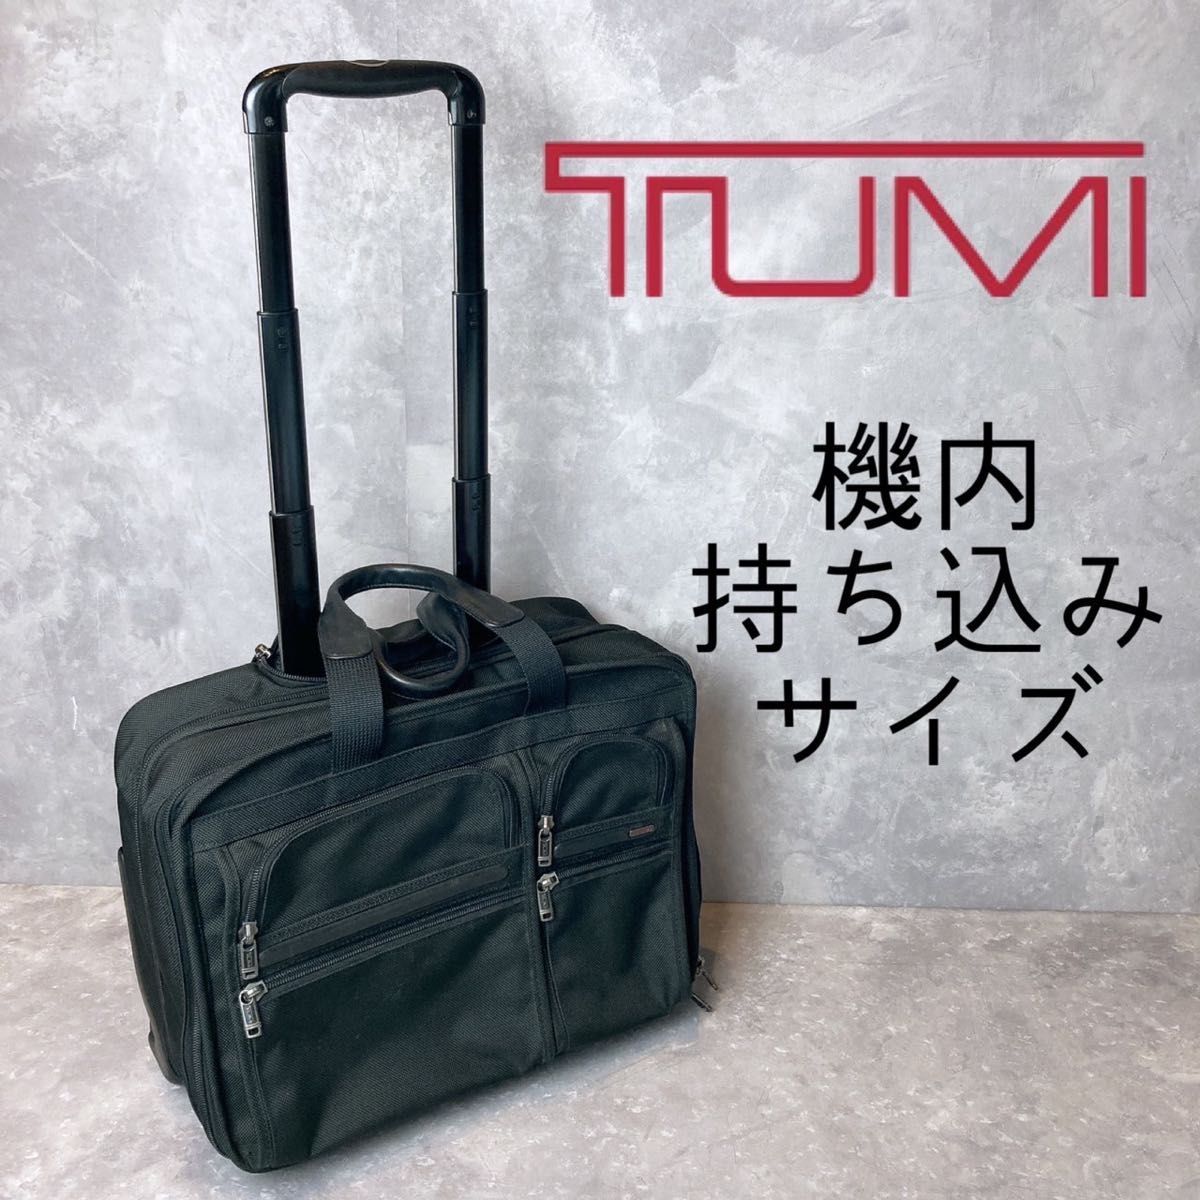 TUMI(トゥミ) キャリーバッグ 機内持ち込み可 シルバー×黒-